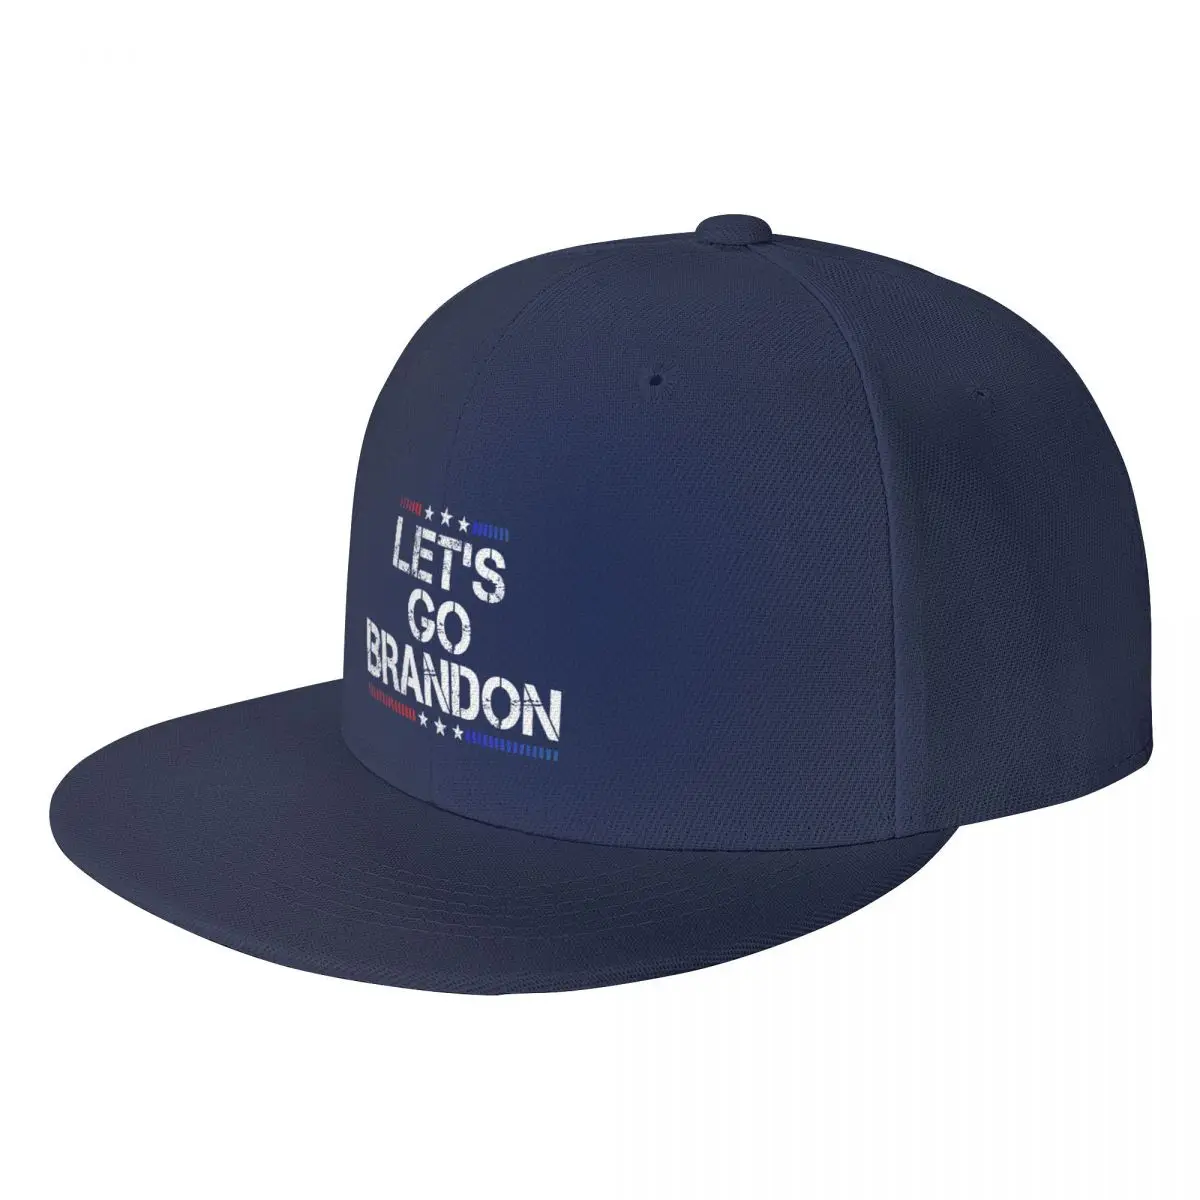 

Let's Go Brandon - lets go brandon Hip Hop Hat hats baseball cap Women caps Men's